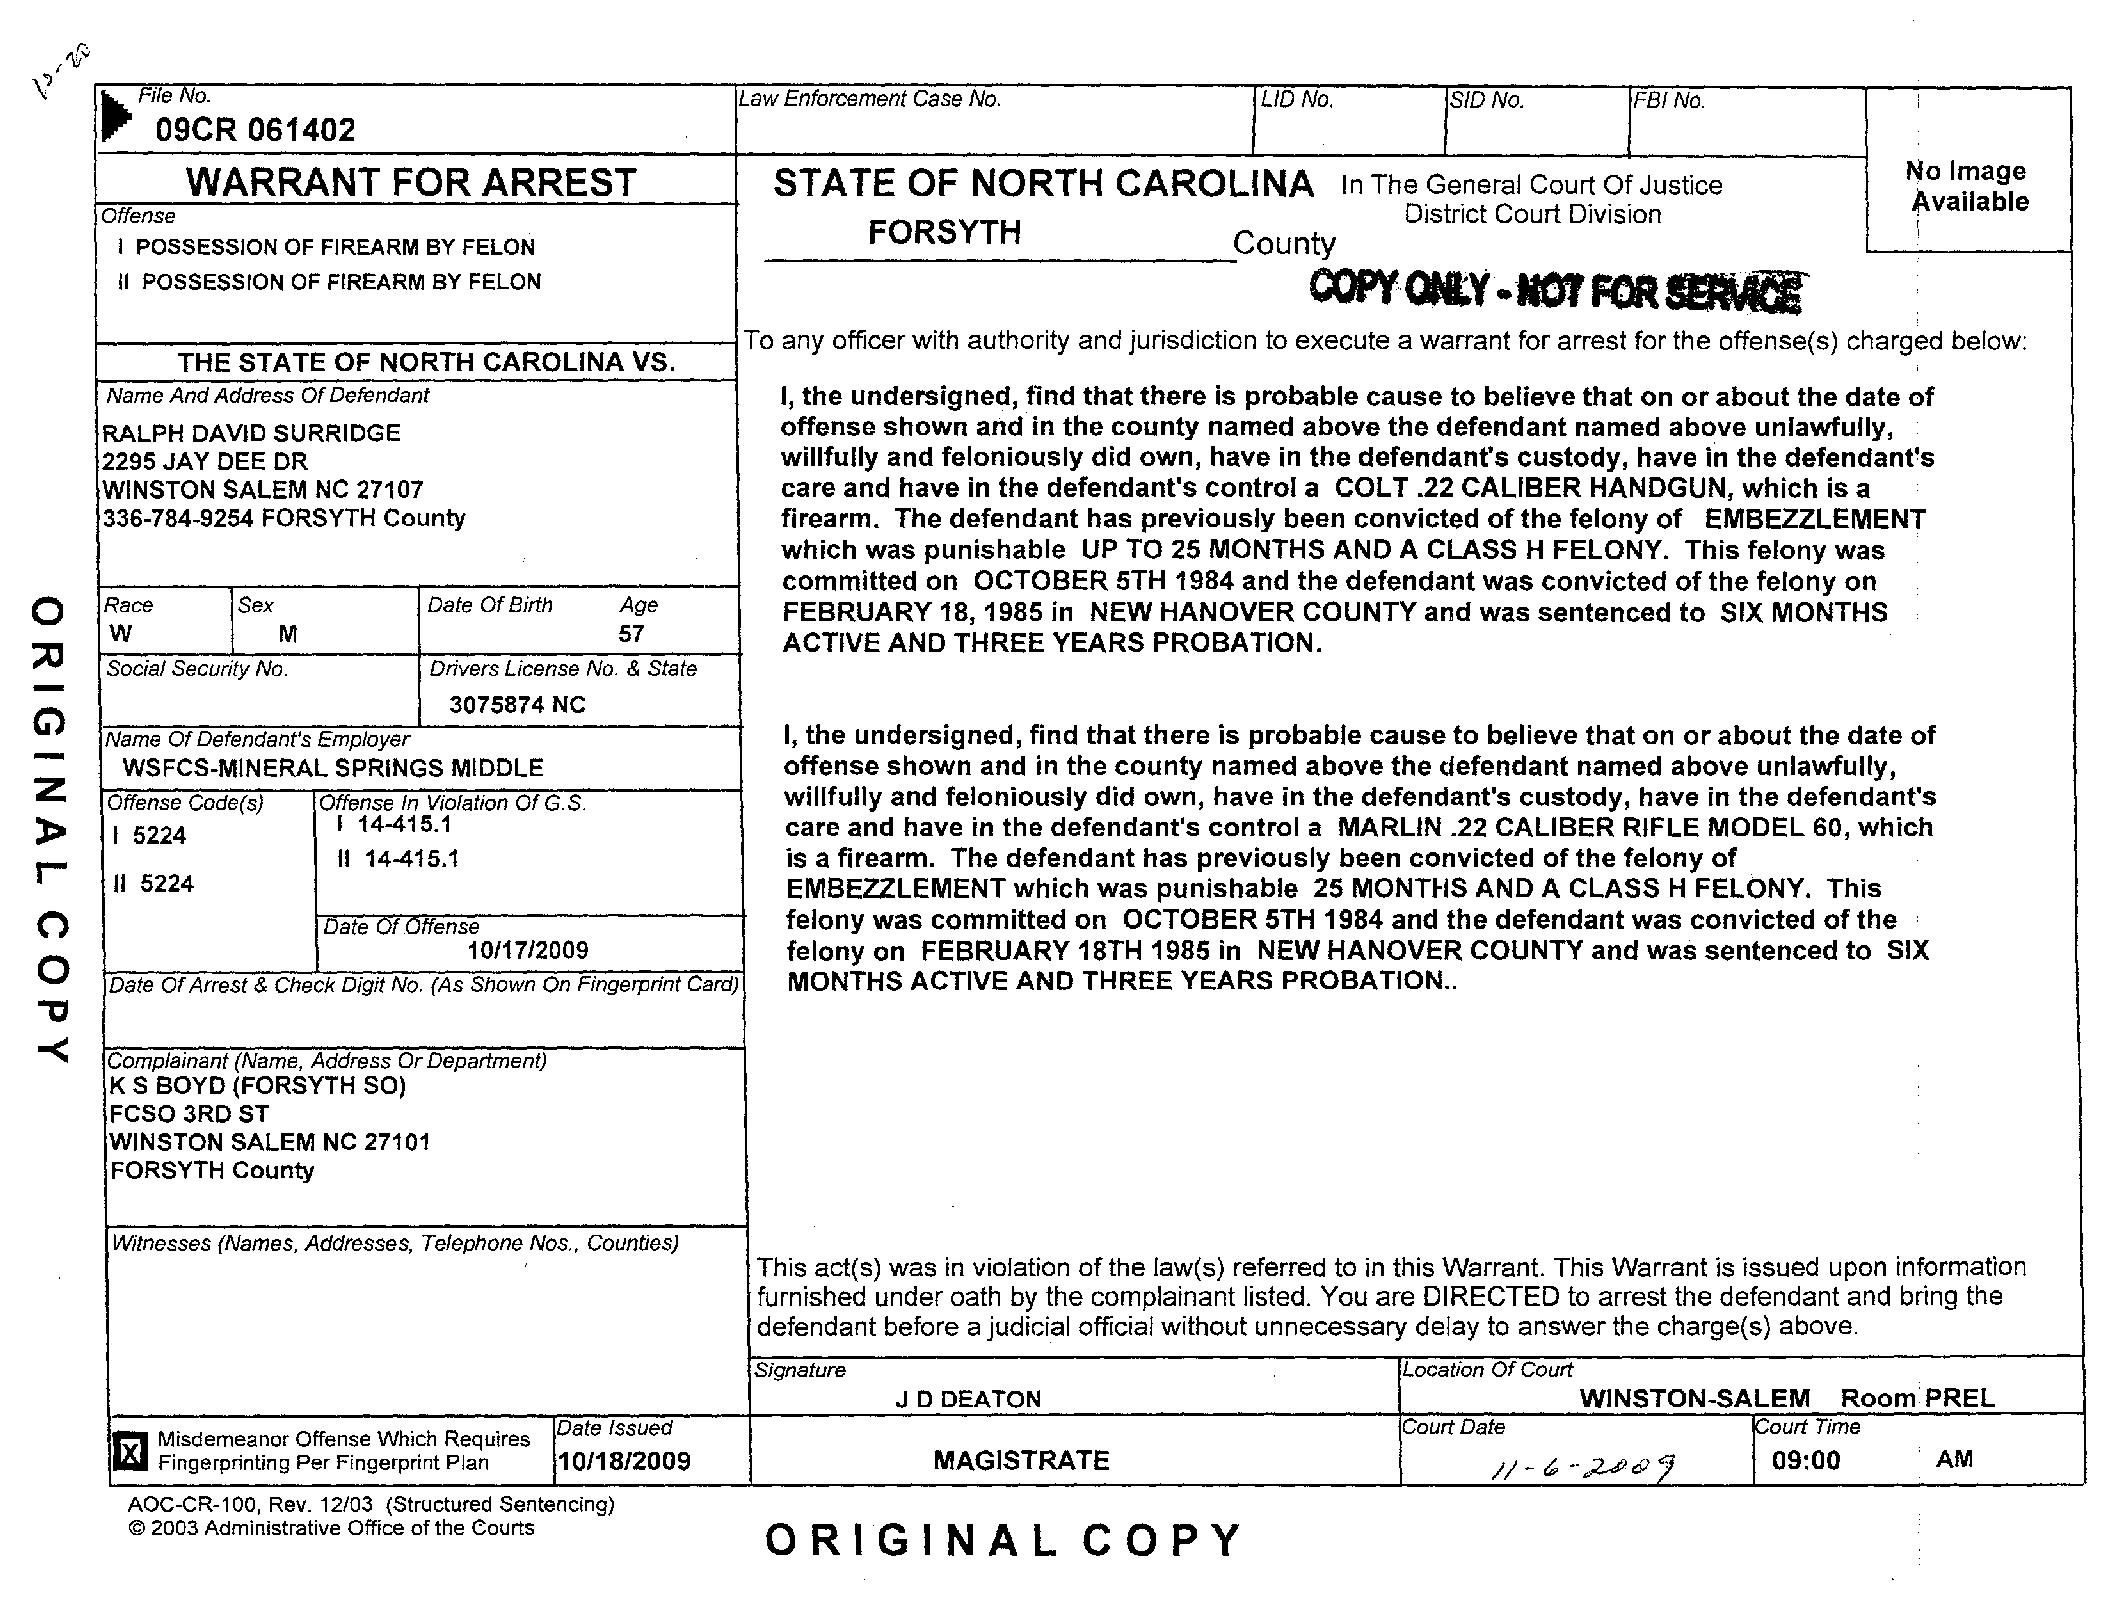 Copy of surridge ralph david arrest warrant6.png